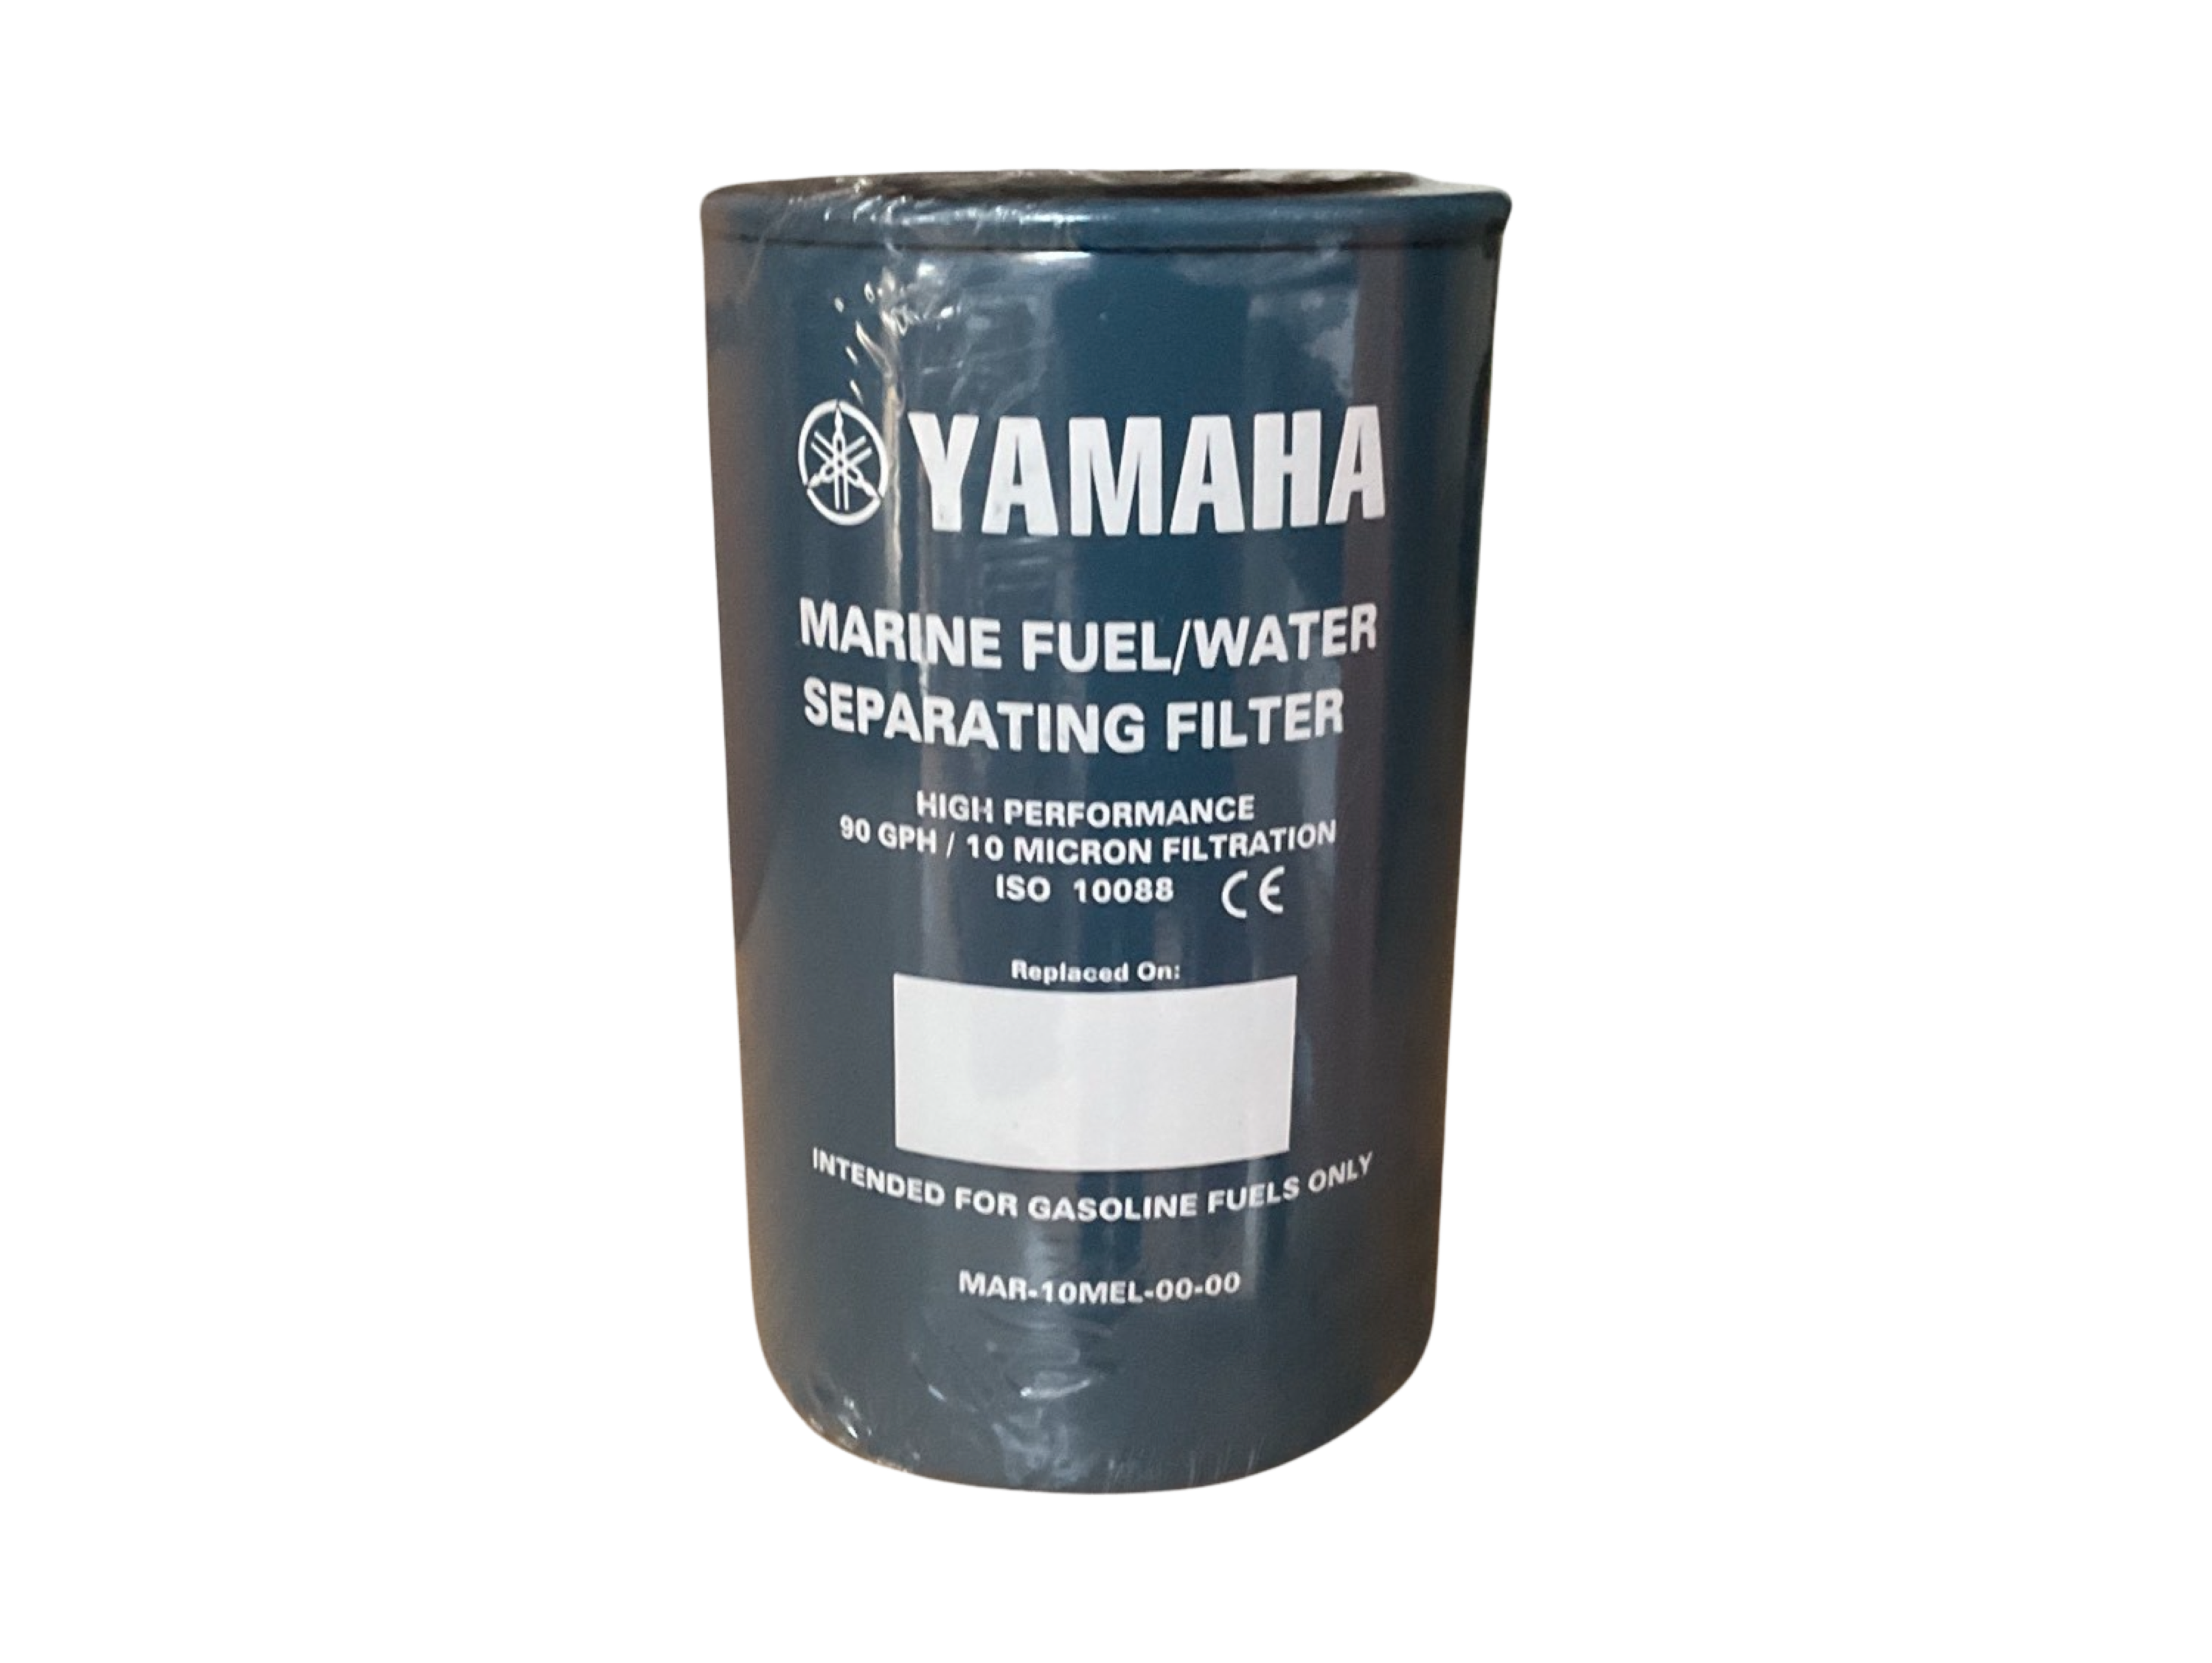 Yamaha Marine Fuel/Water Separating Filter P/N: MAR-10MEL-00-00